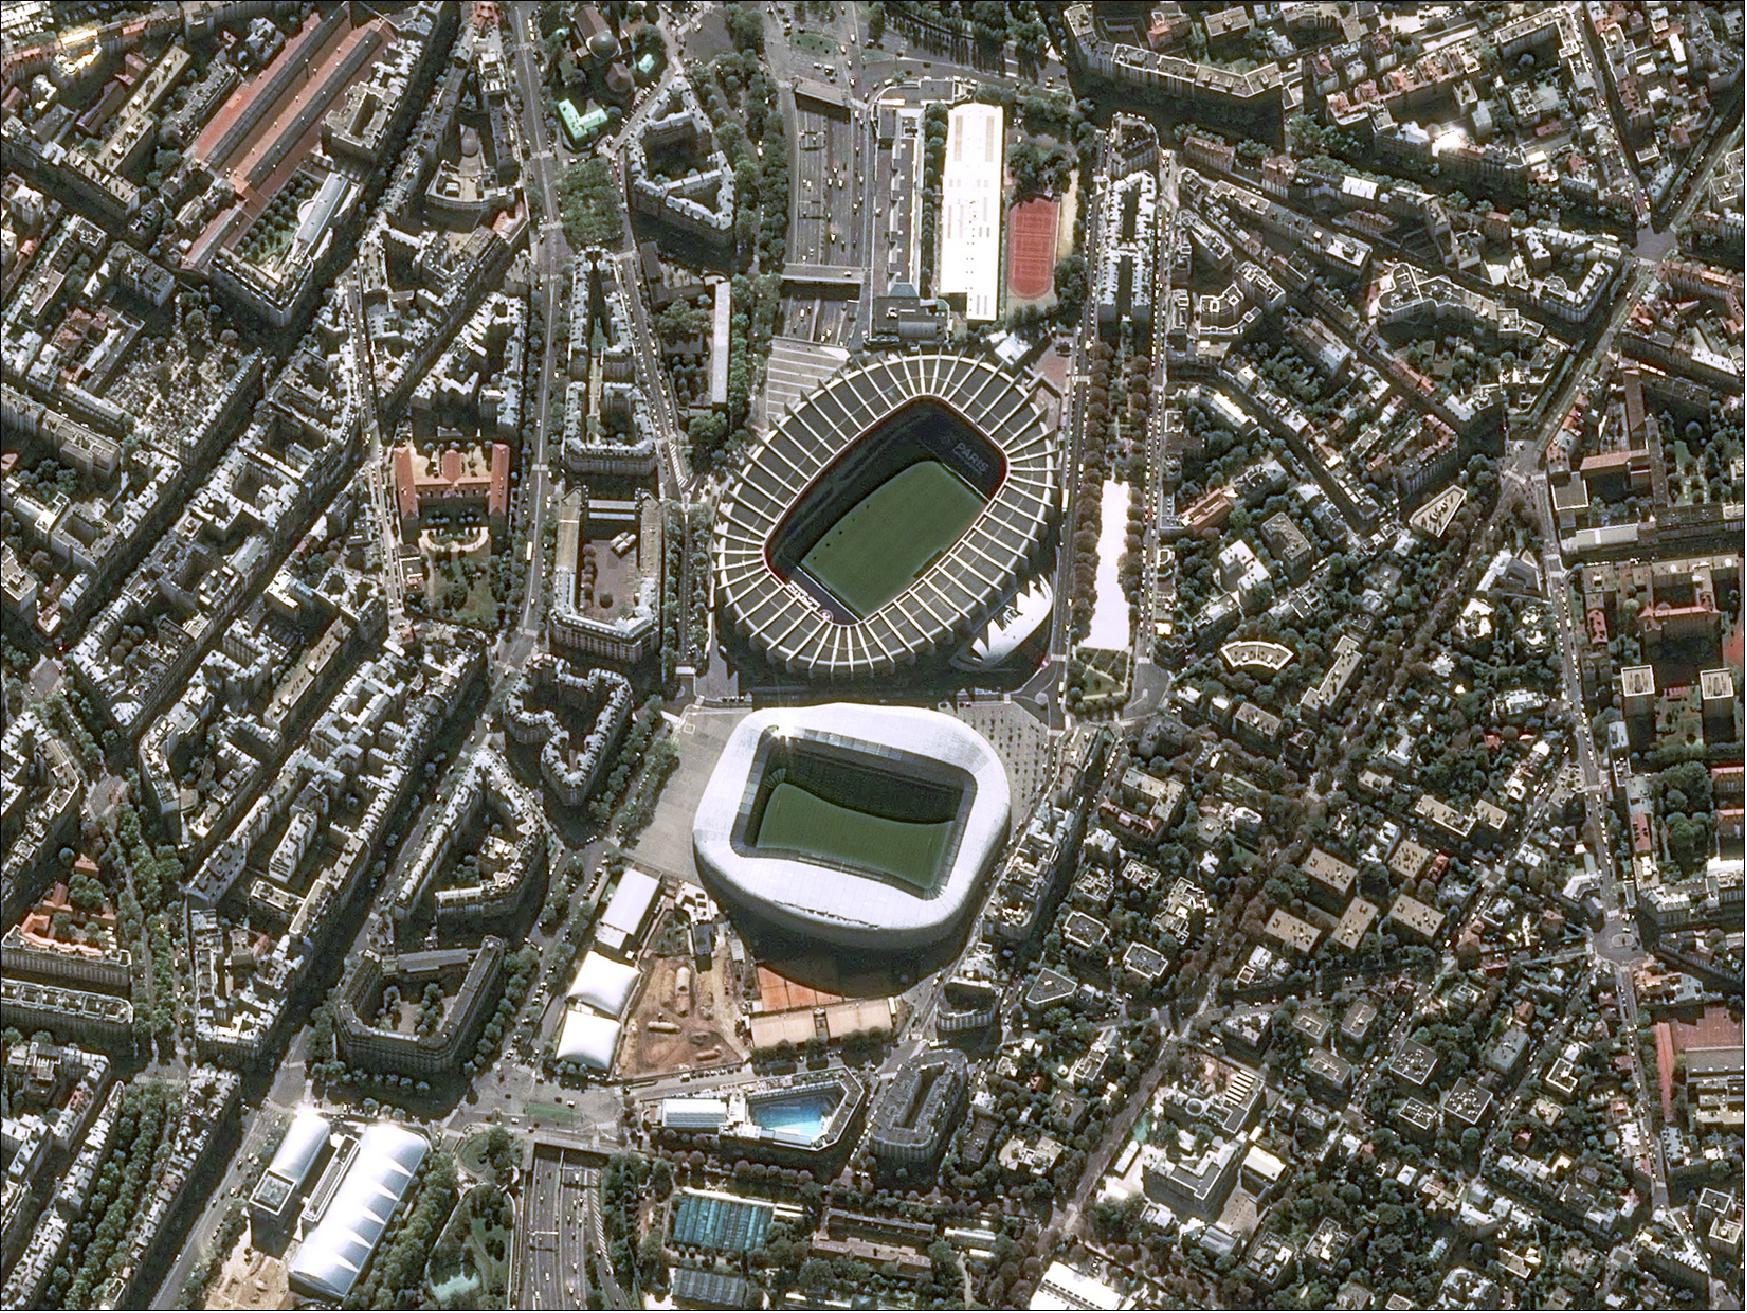 Figure 19: Pleiades Satellite Image - Stade Parc Des Princes, Paris (image credit: Airbus DS)